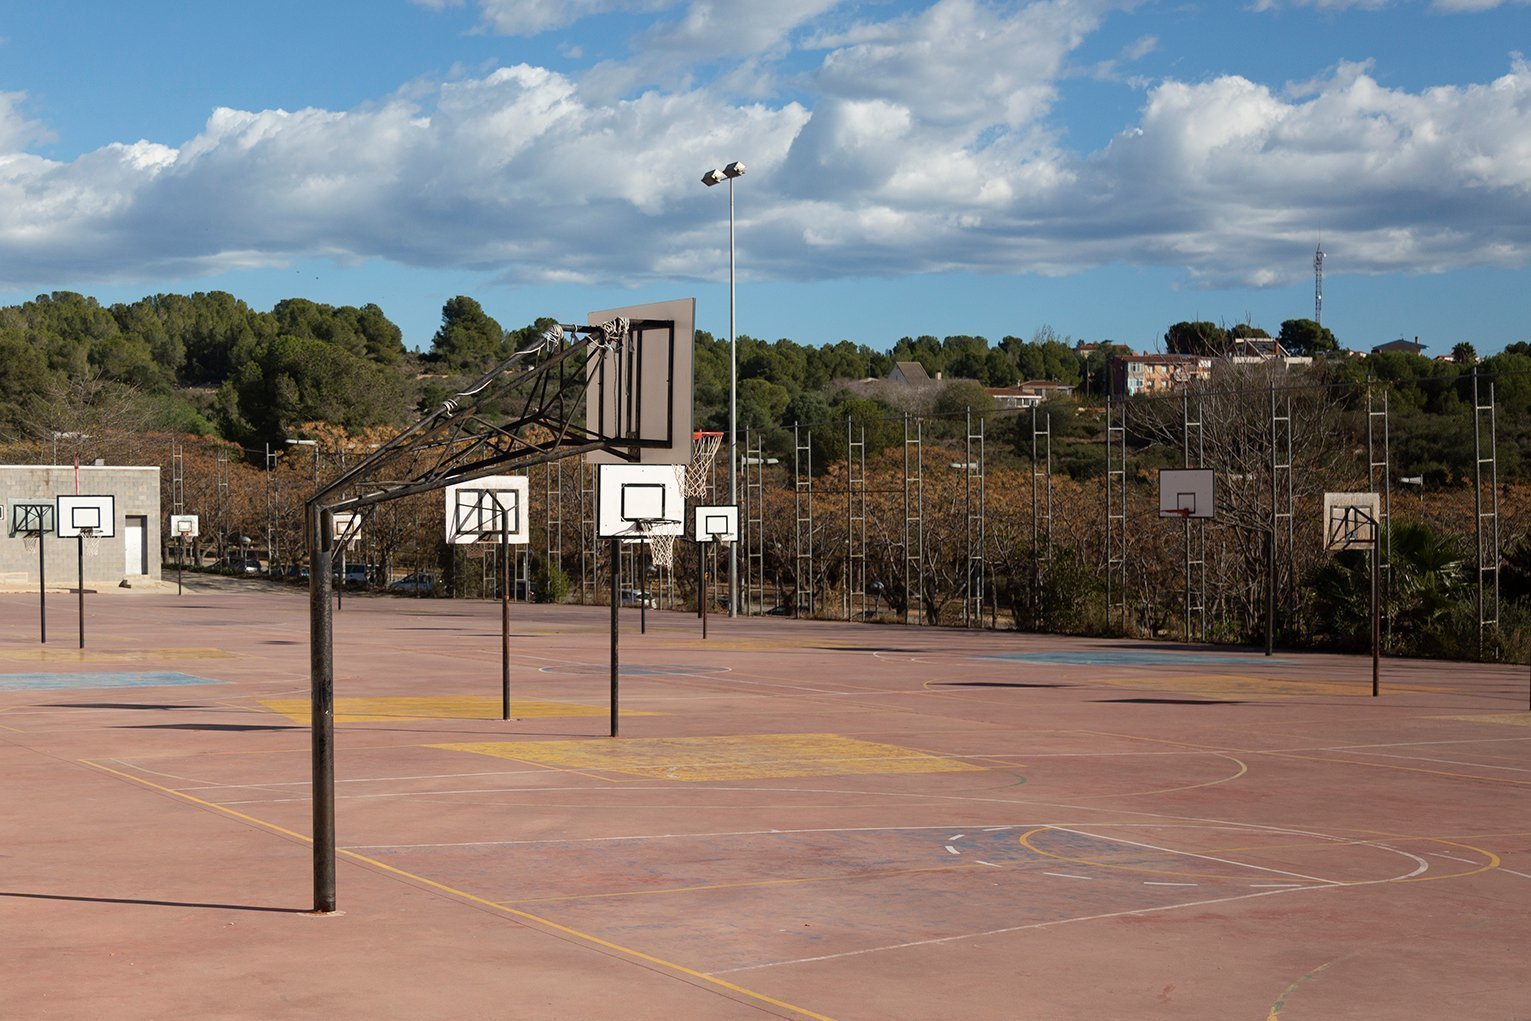 Pistes-basquet-exteriors-1-1-1-1.jpg